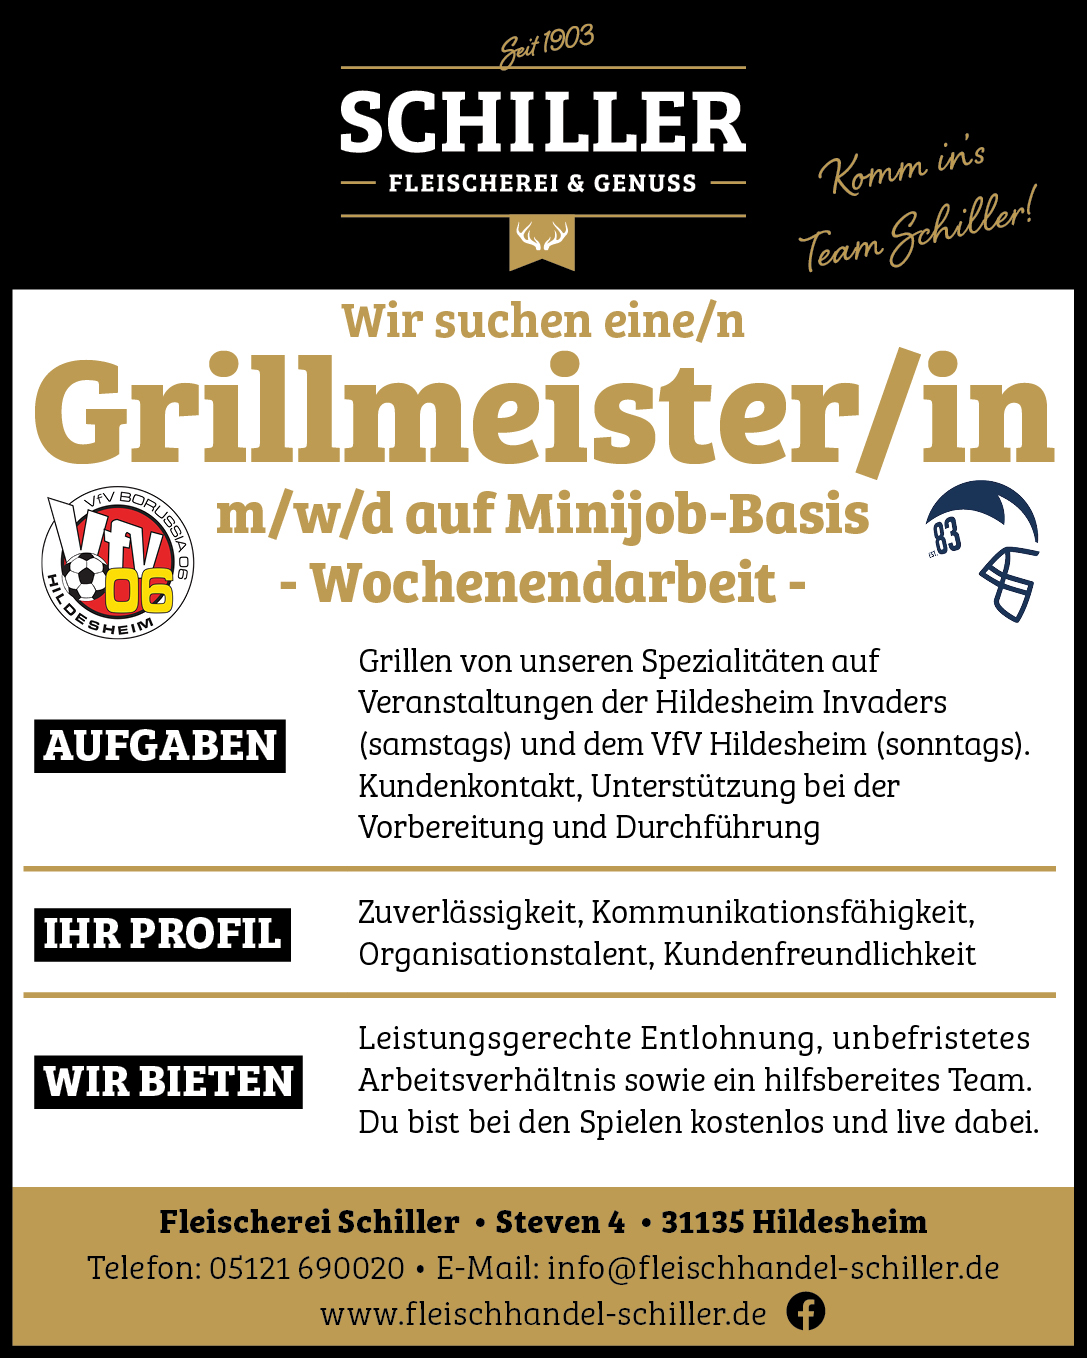 Grillmeister/in gesucht - freie Stellen